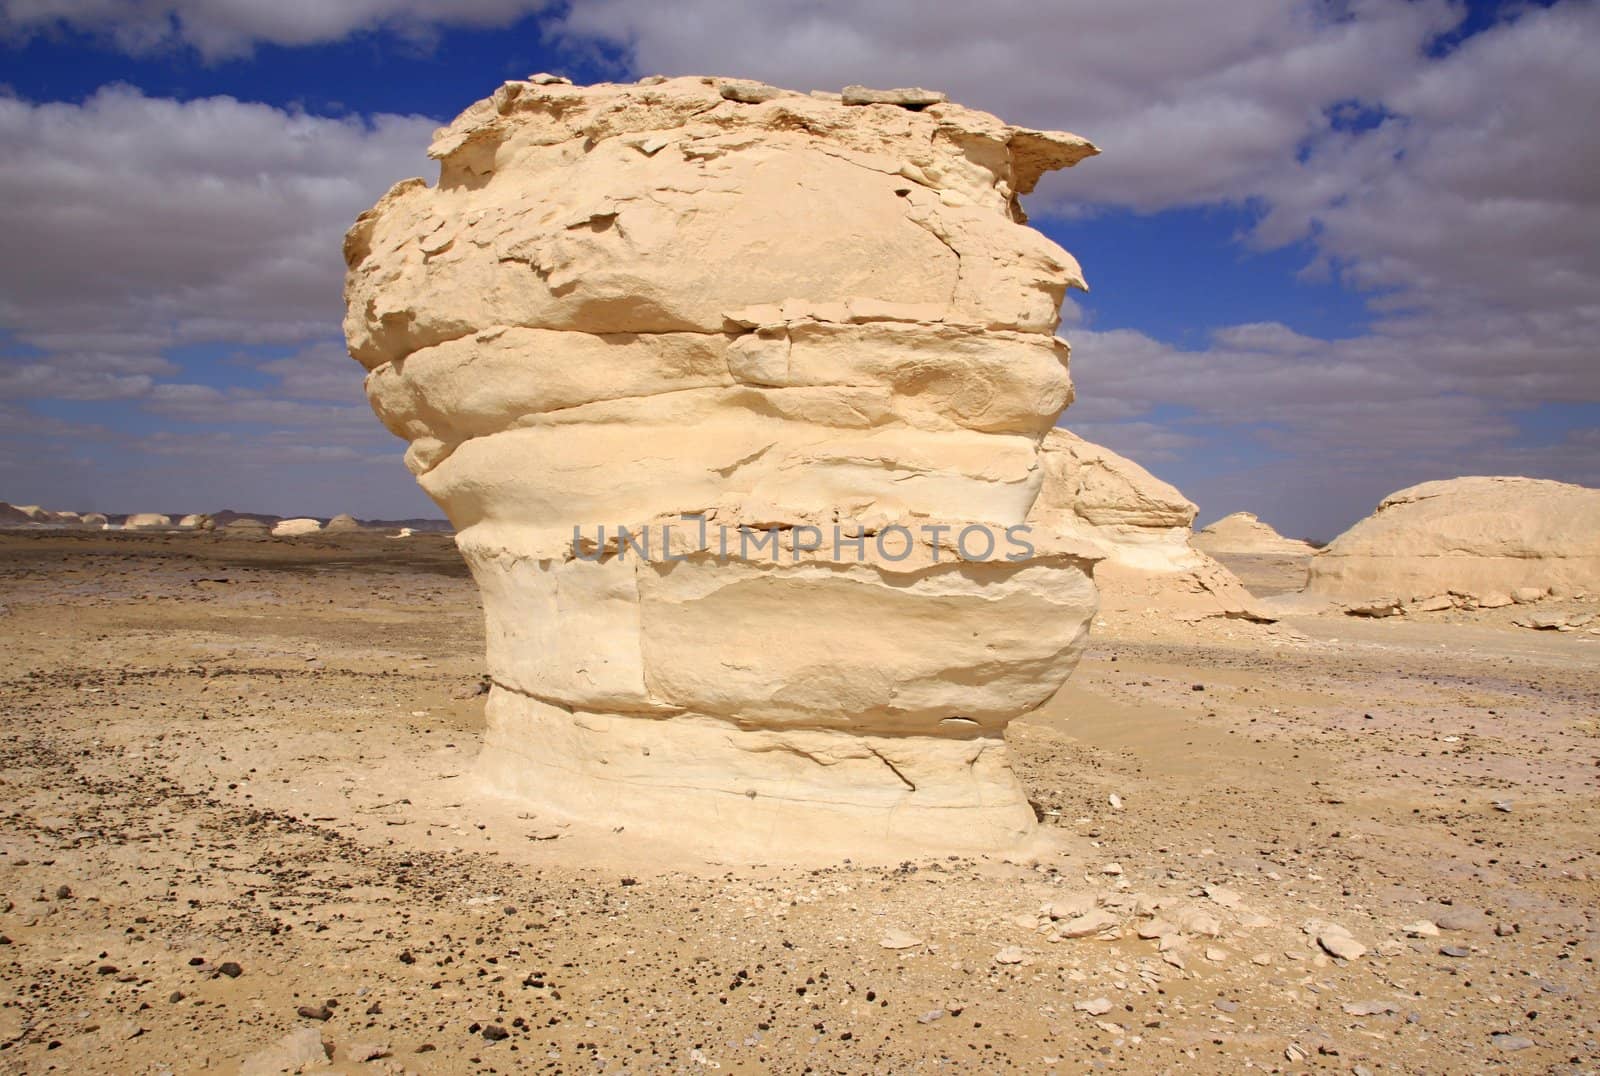 Whitte desert statue,Egypt by jnerad